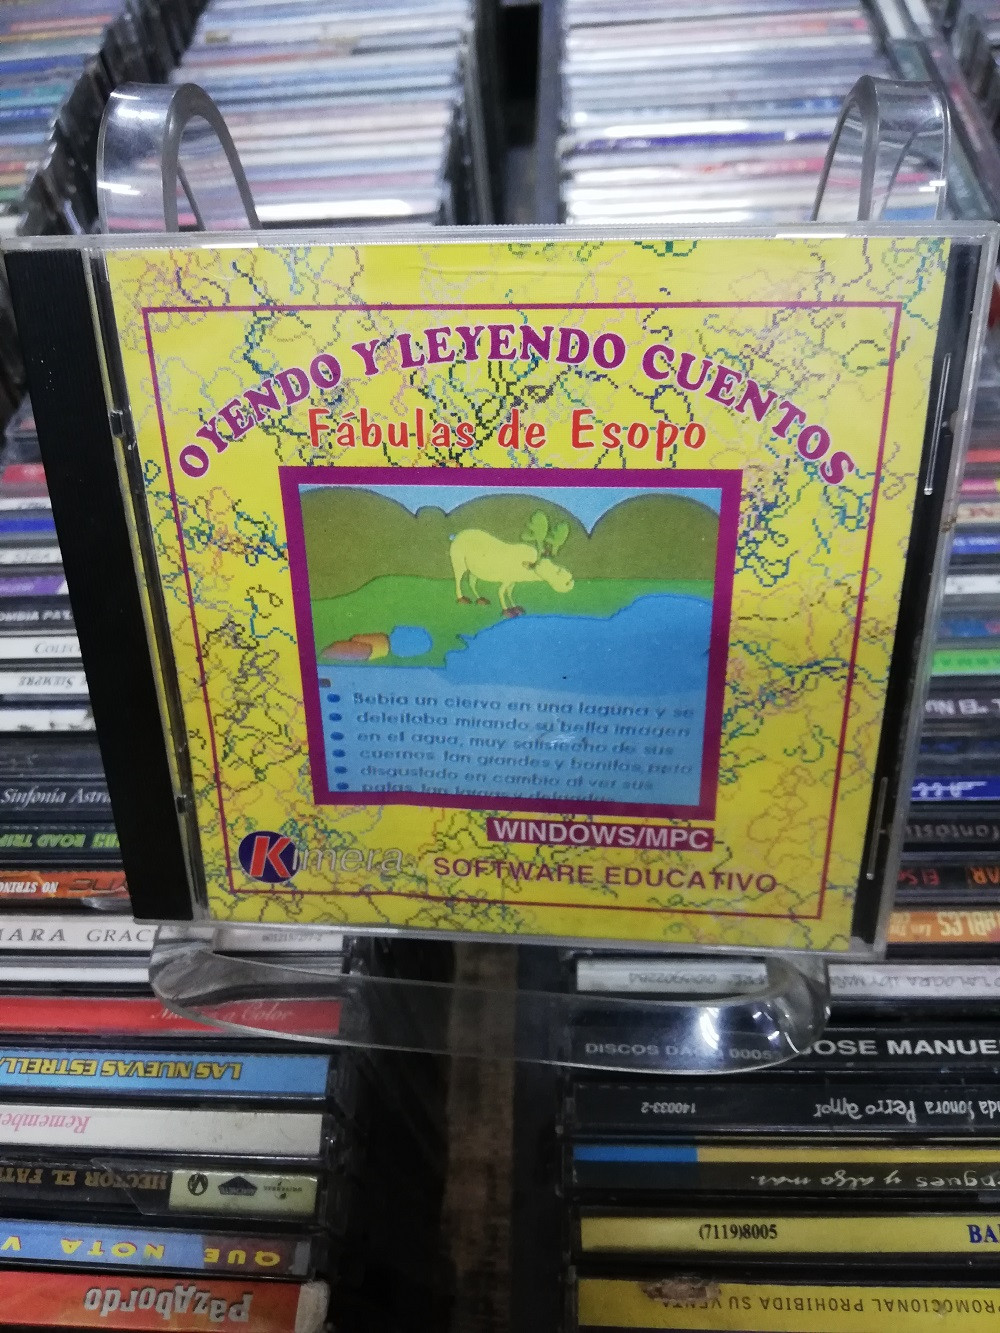 Imagen CD ROM FABULAS DE ESOPO - OYENDO Y LEYENDO CUENTOS